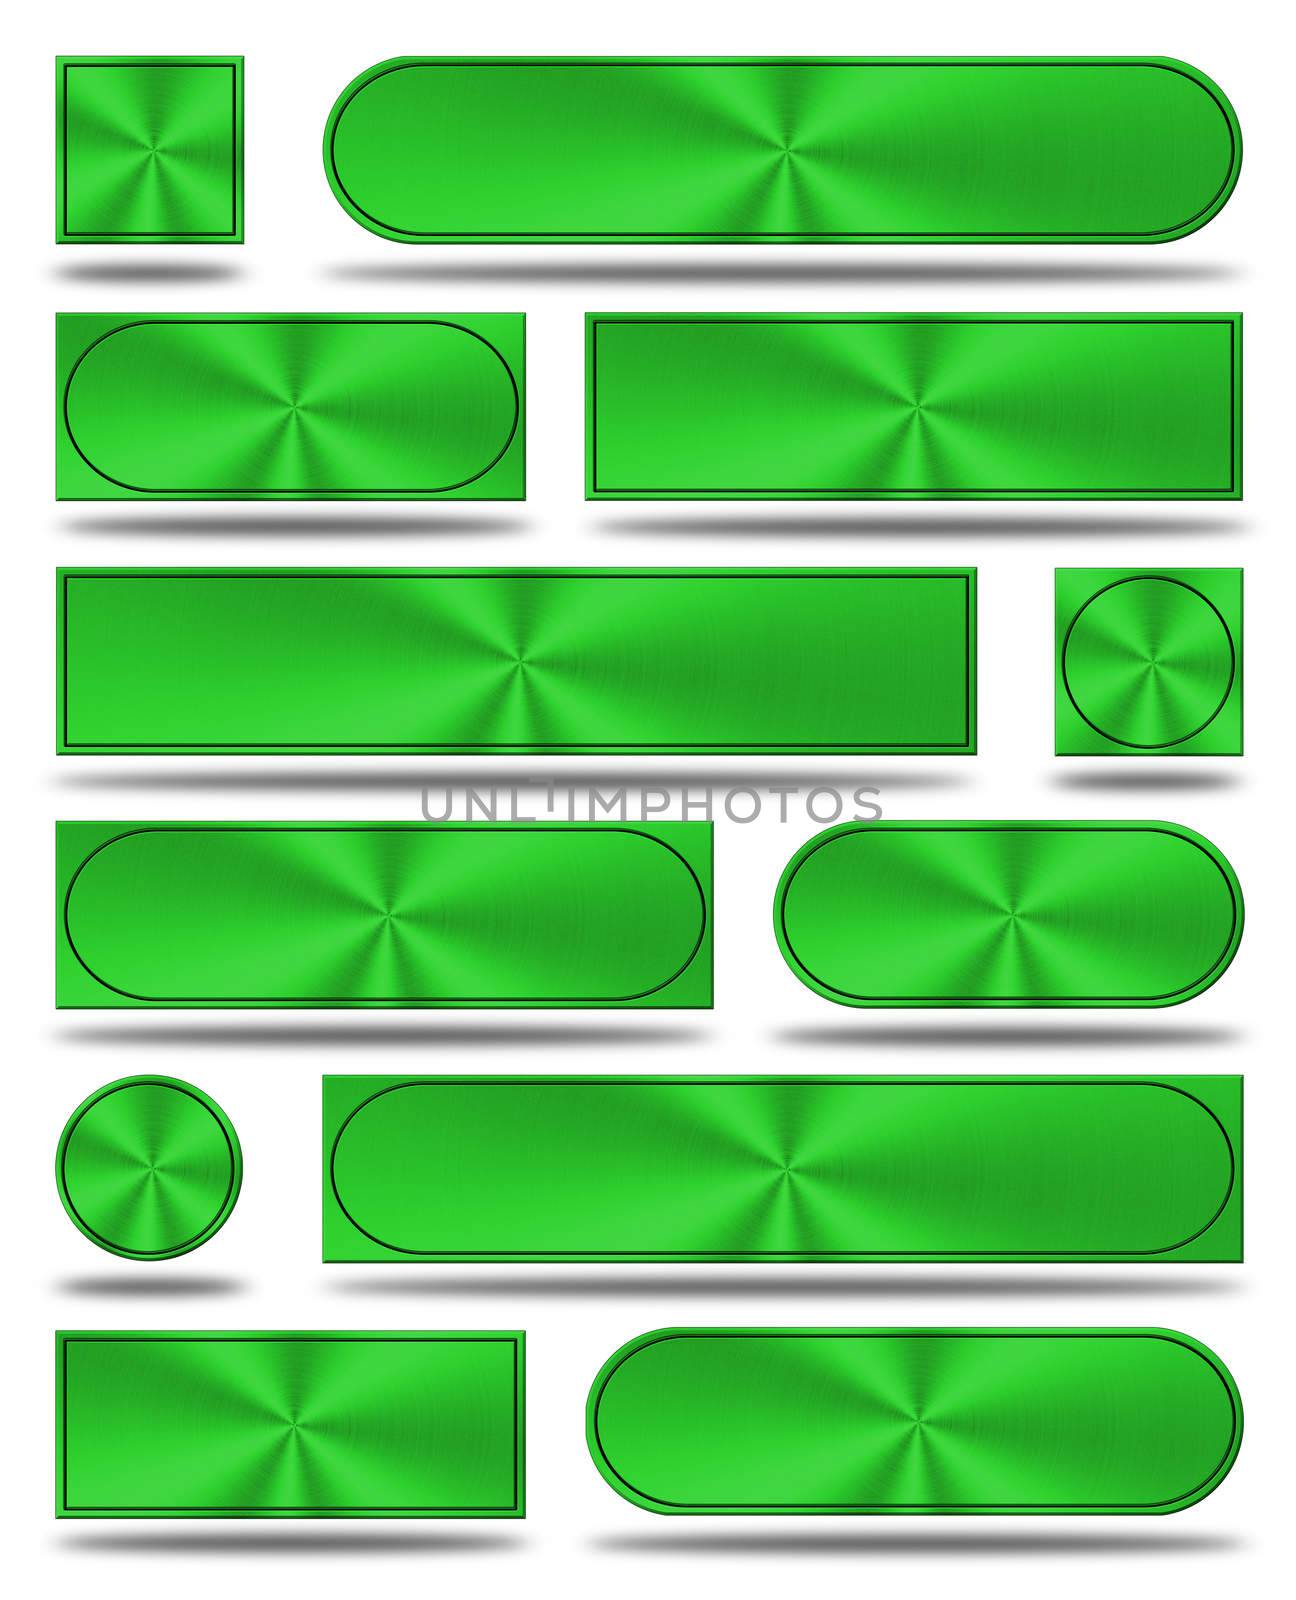 The aluminum buttons- green version by konradkerker